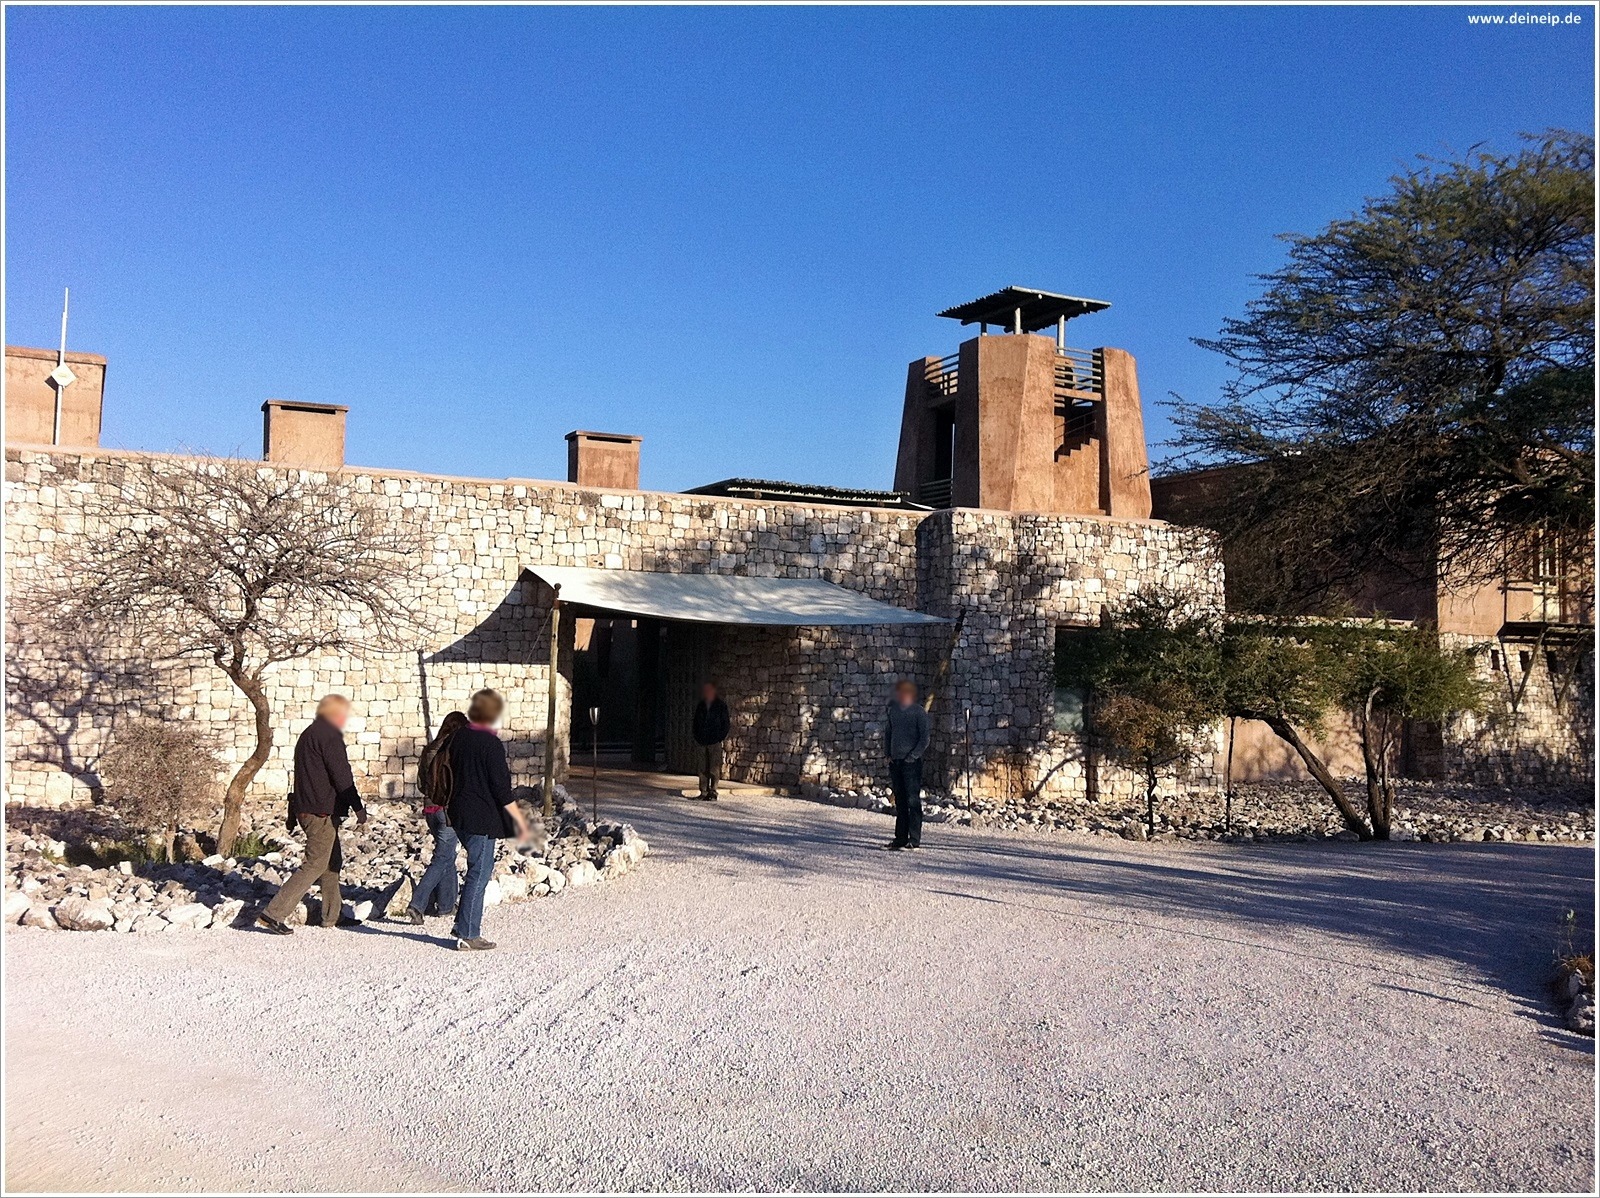 Namibia – Onguma The Fort